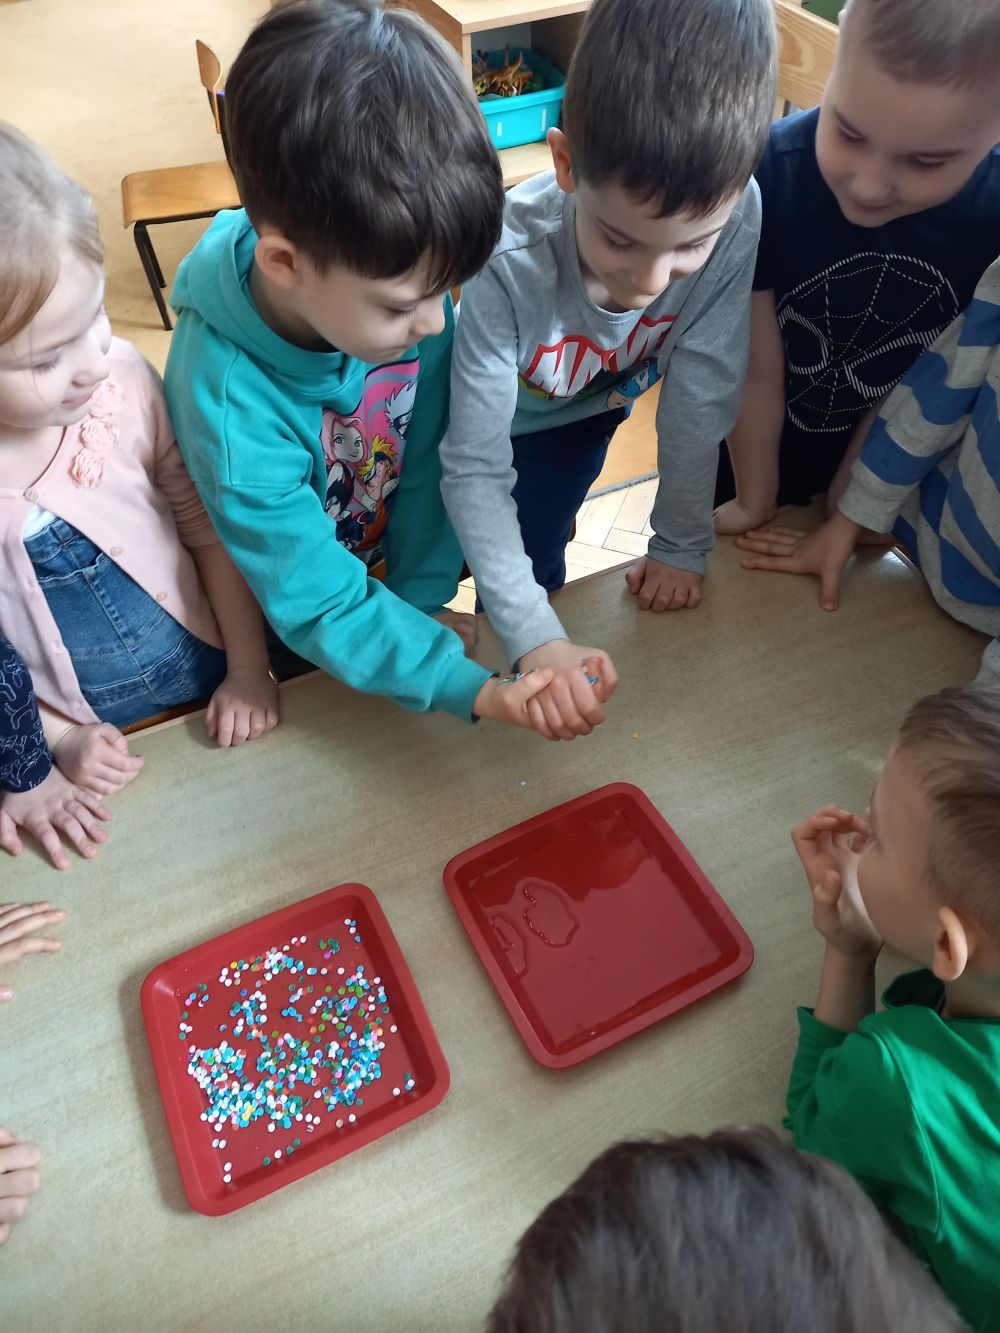 Kilkoro dzieci stoi przy stoliku. Na stoliku leżą dwie czerwone tacki- z wodą oraz konfetti. Dwóch chłopców podaje sobie ręce. Jeden ma rękę oblepioną konfetti. 